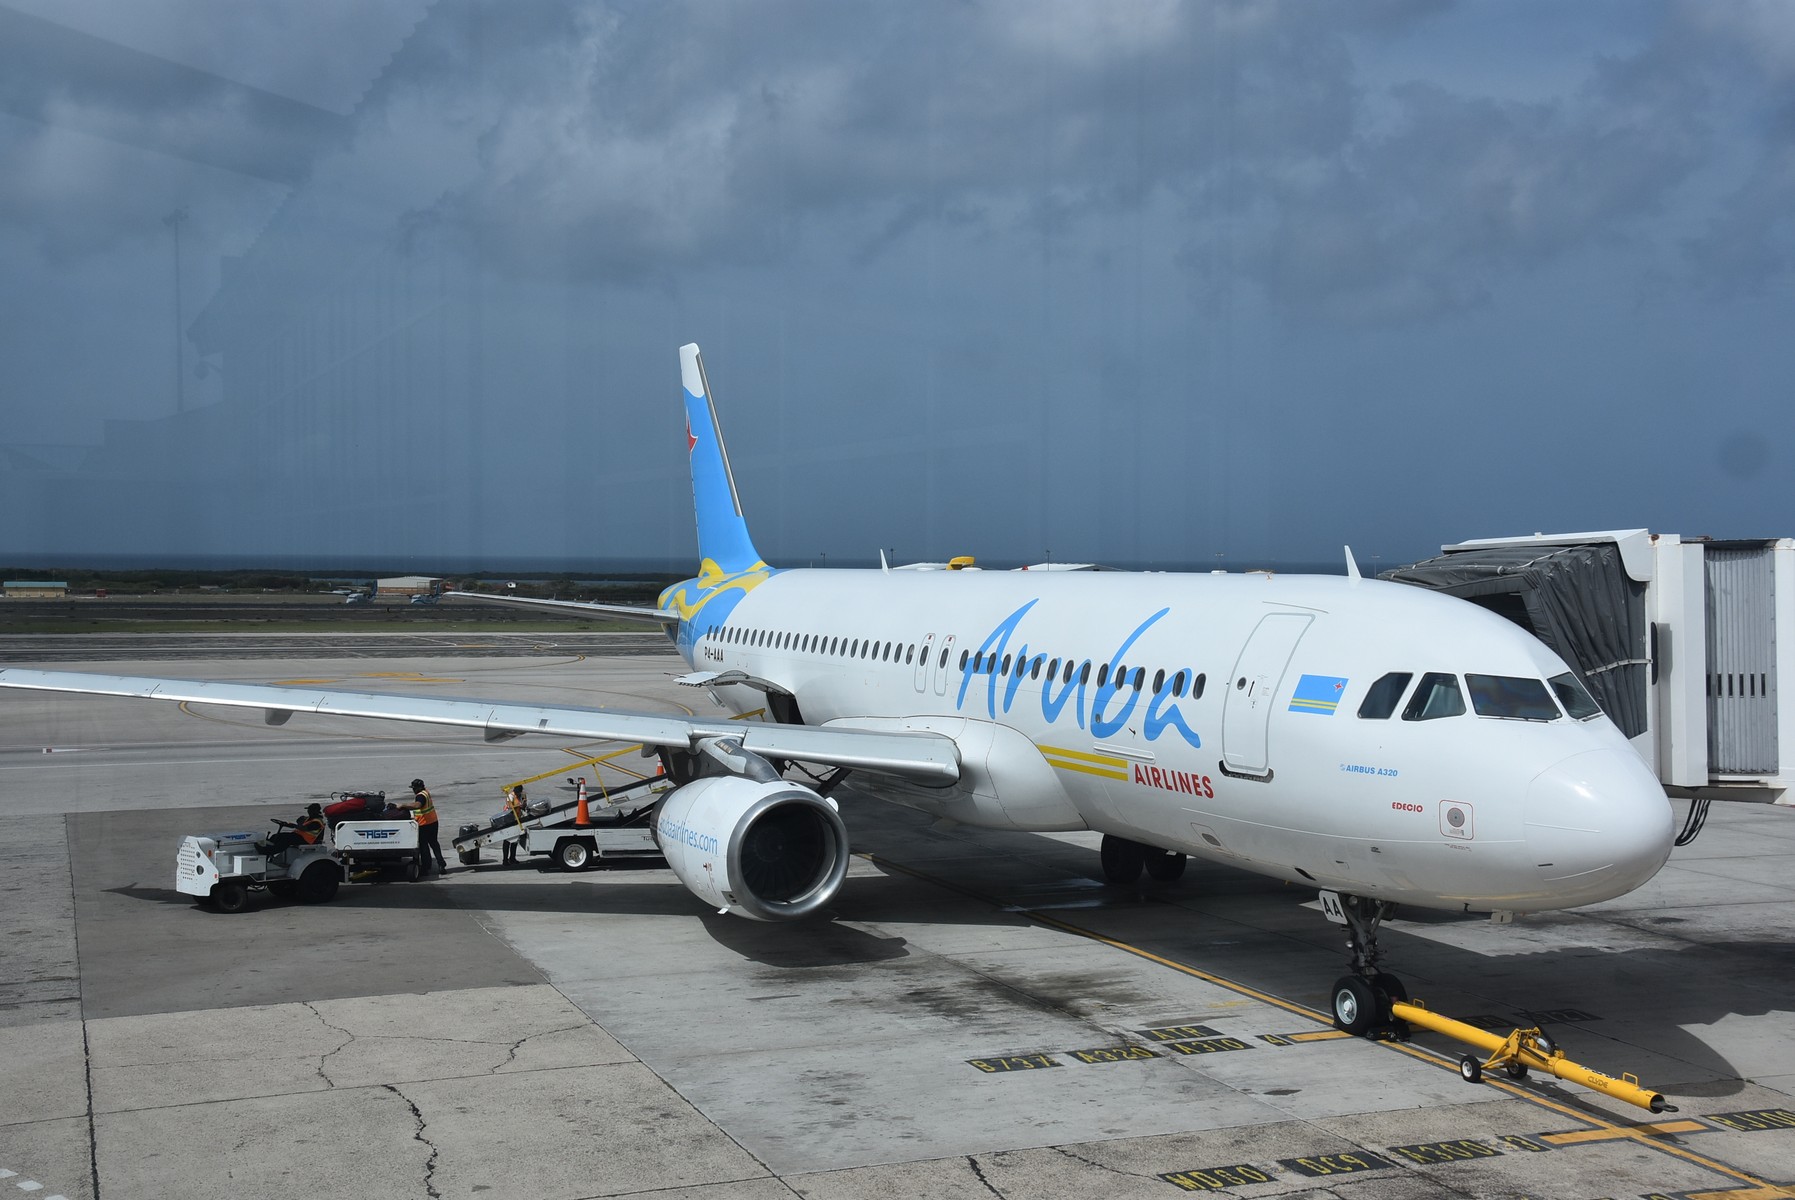 Ampliacion di rutanan di Aruba Airlines ta confirma e vision di Minister Oduber pa crea di Aruba un Hub den nos region